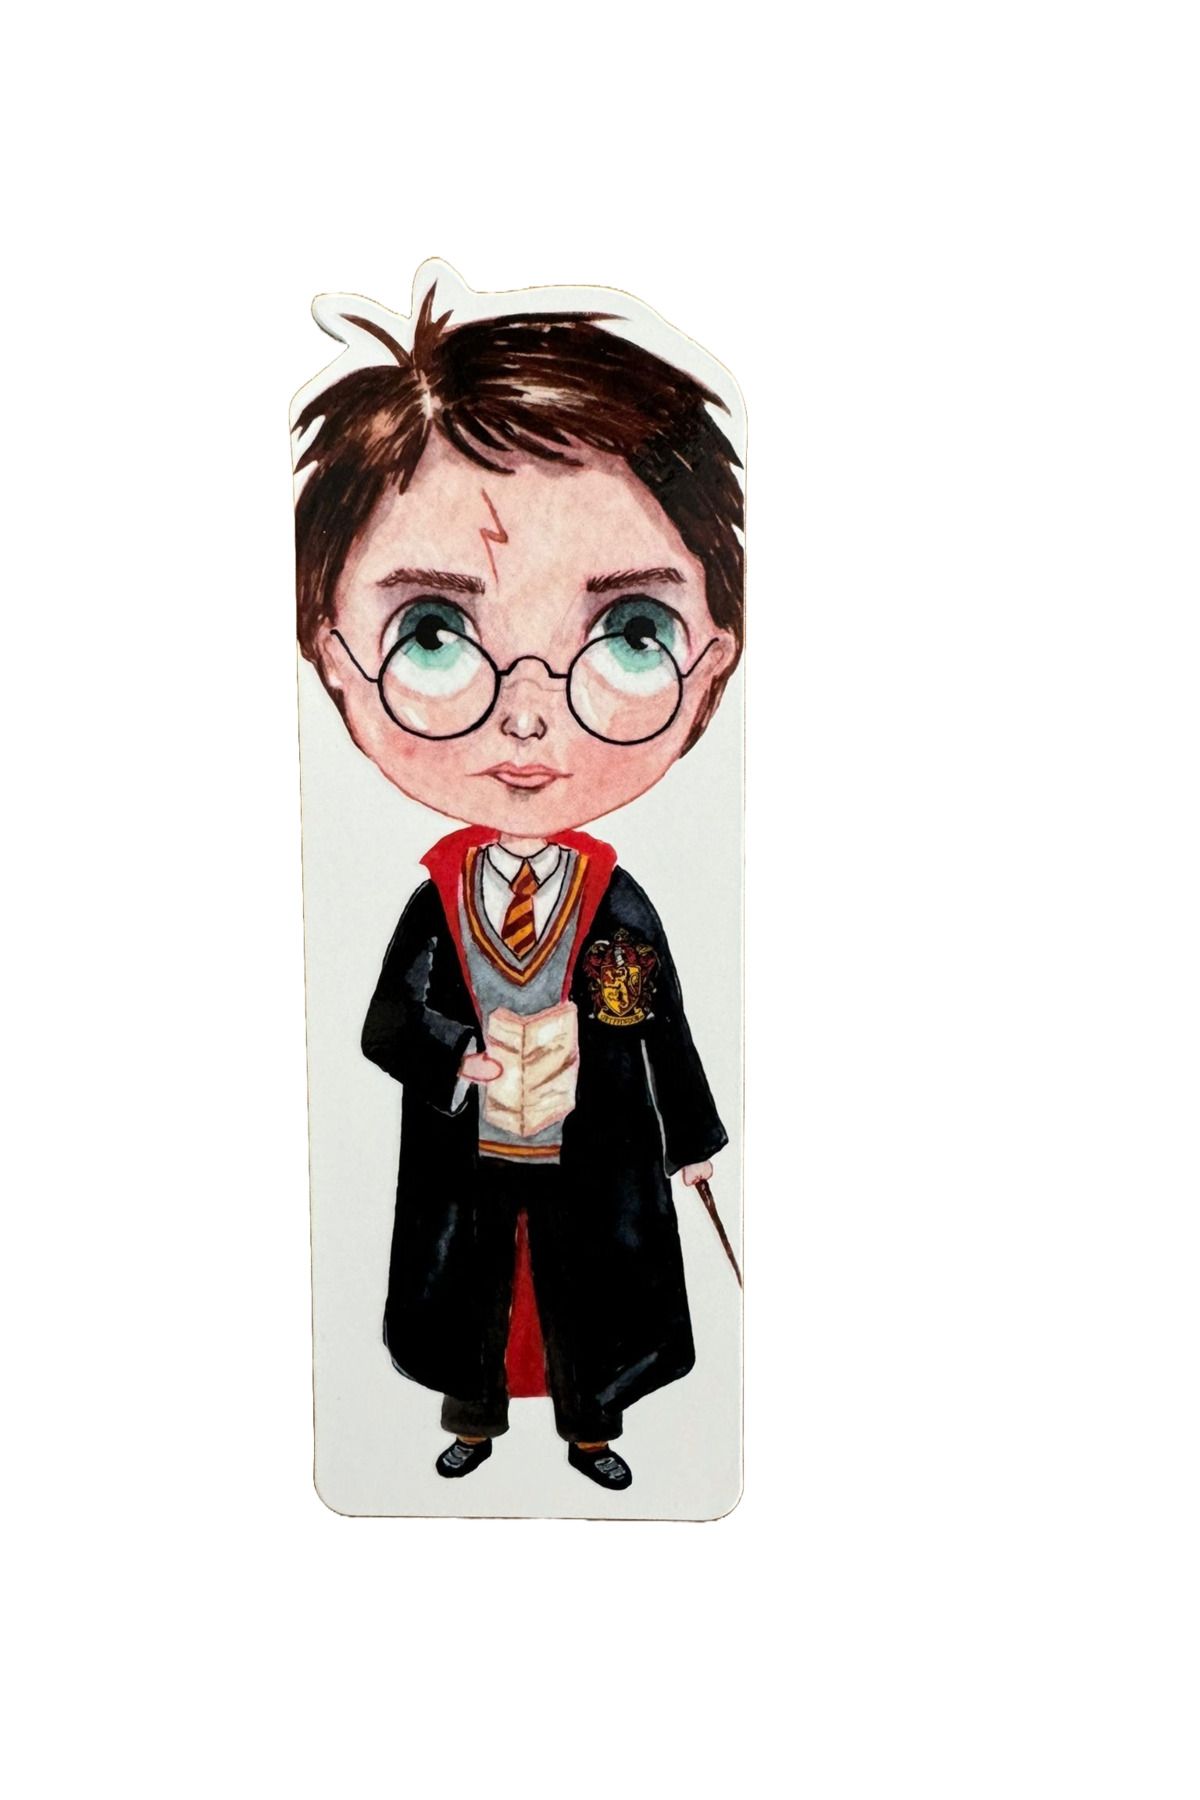 Kıvırcık Senyorita TM Kitap Ayracı - Harry Potter Desenli Kitap Ayrıca - Kalın Kaliteli Kitap Ayracı - Desenli Ayraç